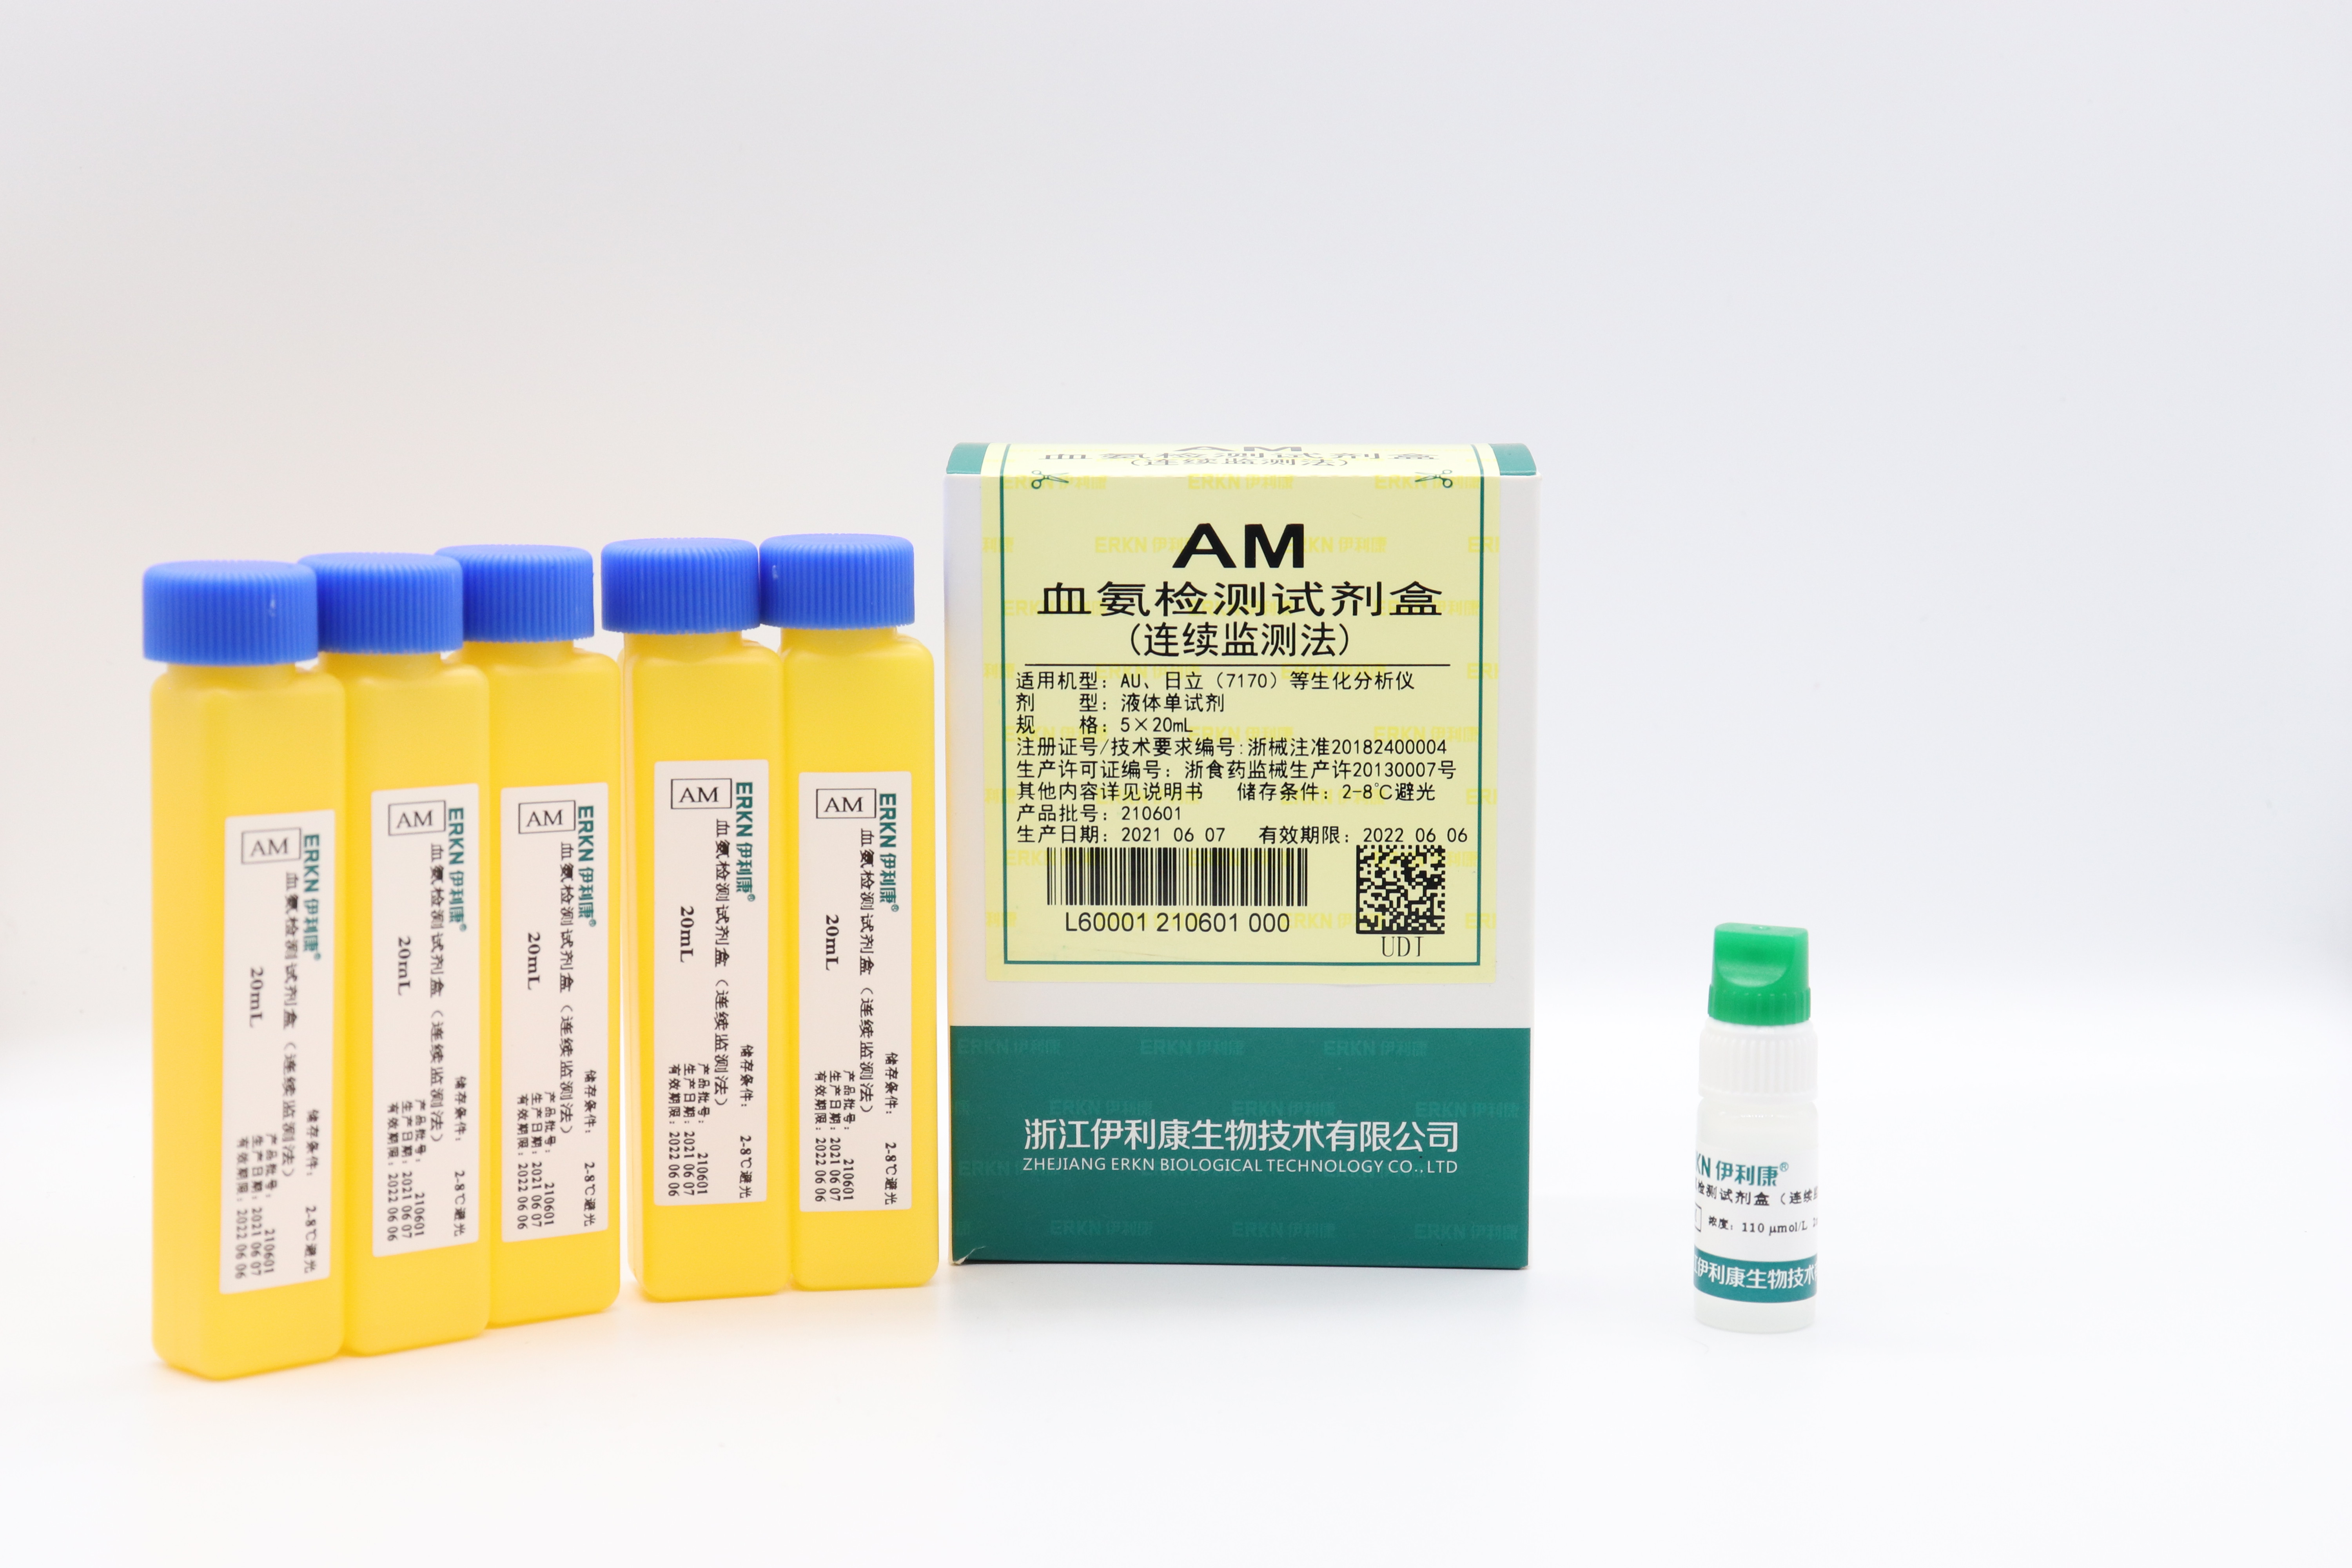 【伊利康】血氨检测试剂盒（连续监测法）